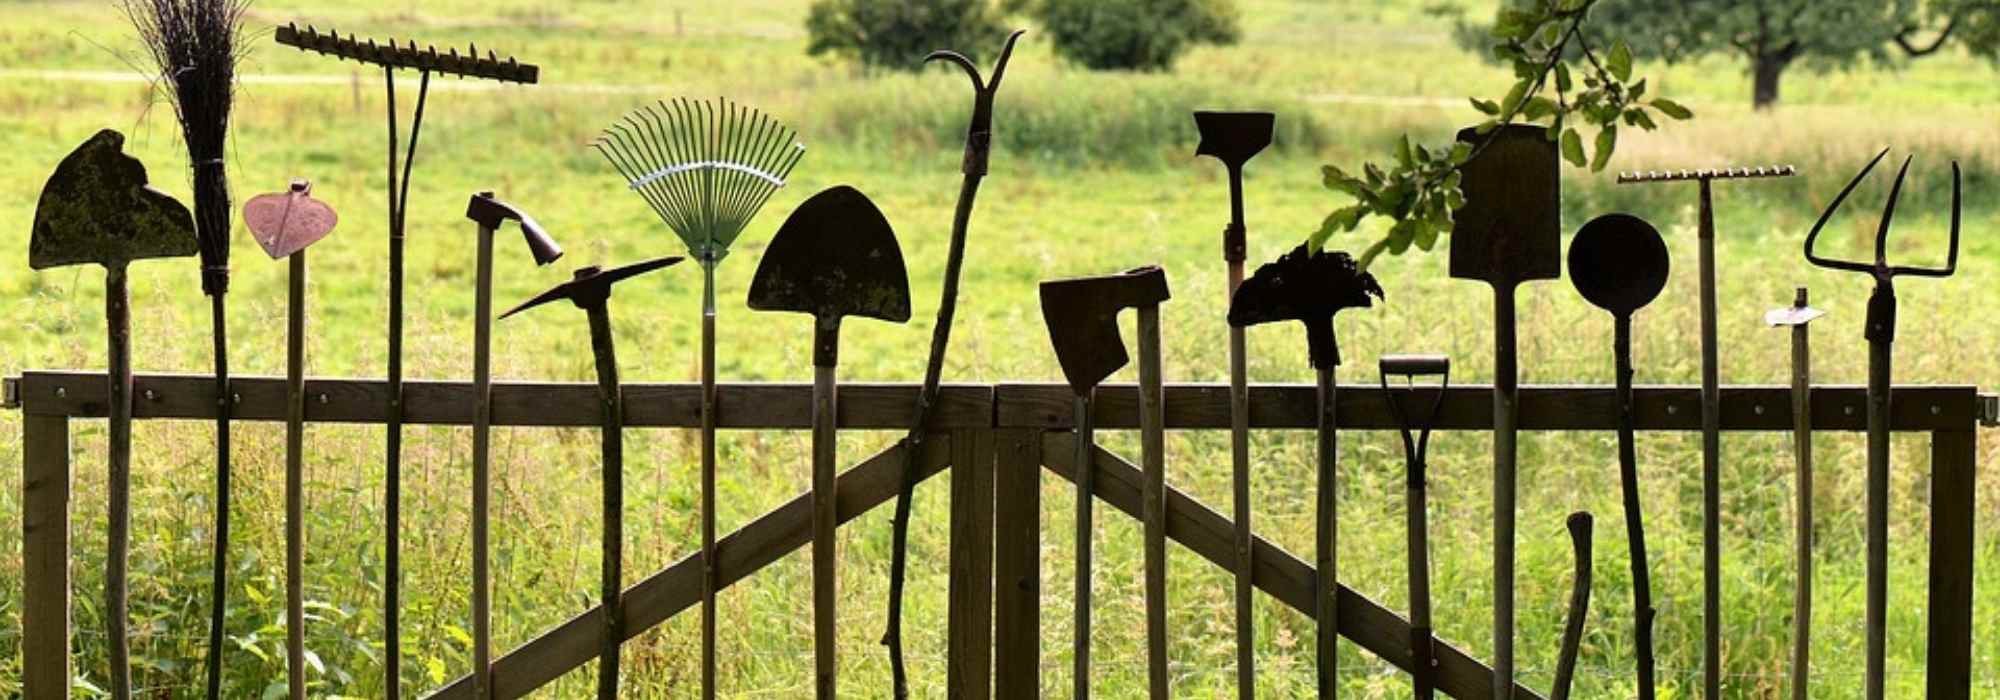 Mes outils de jardinage - La terre est un jardin